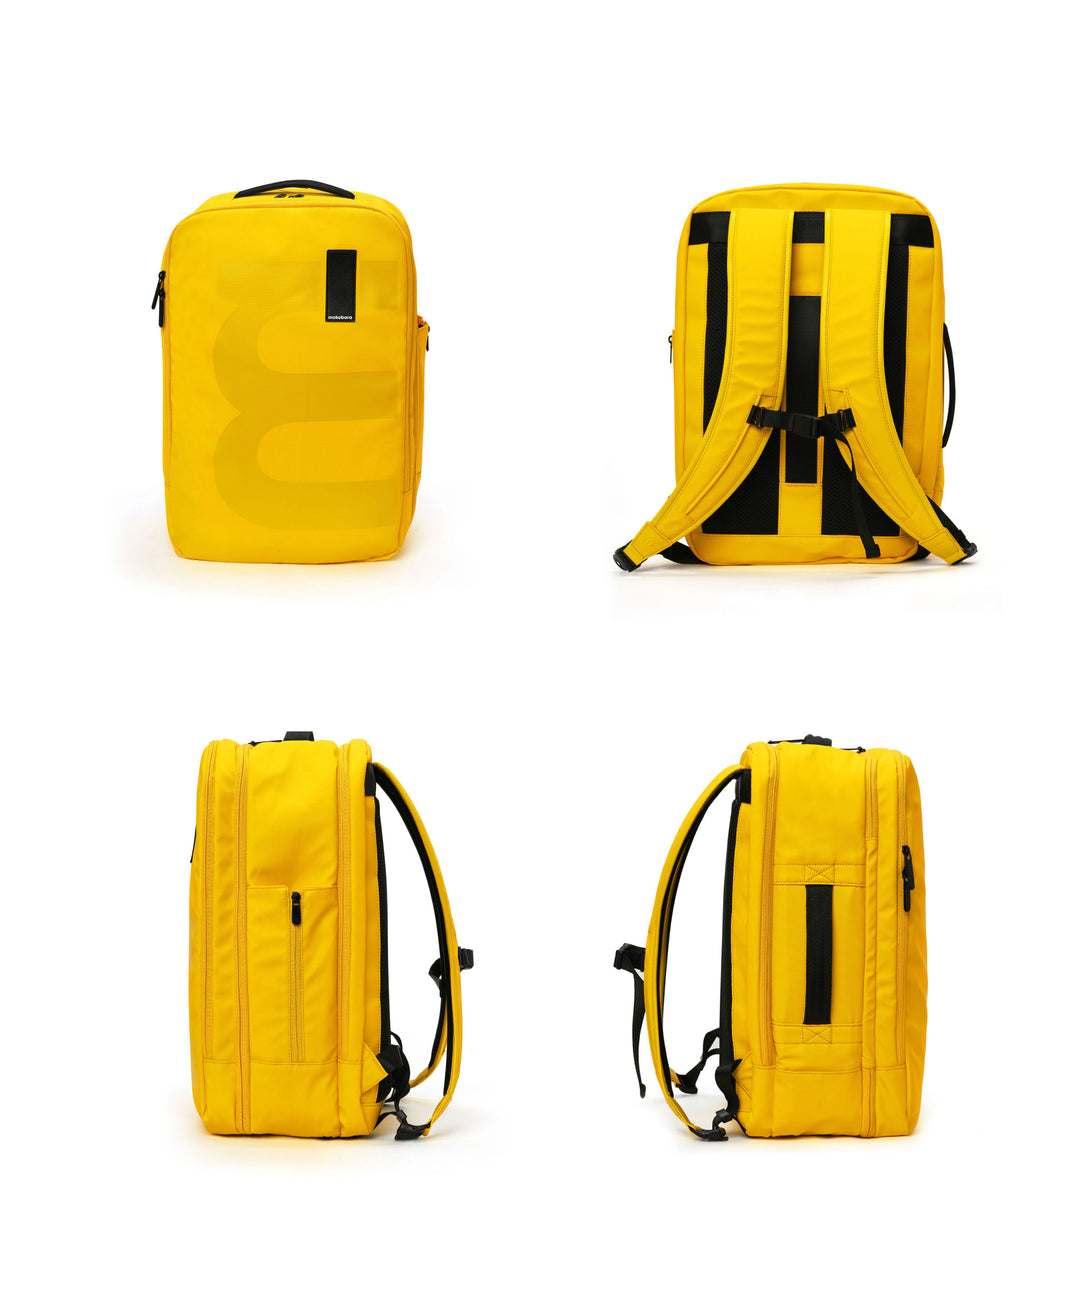 The Em Travel Backpack - 45L